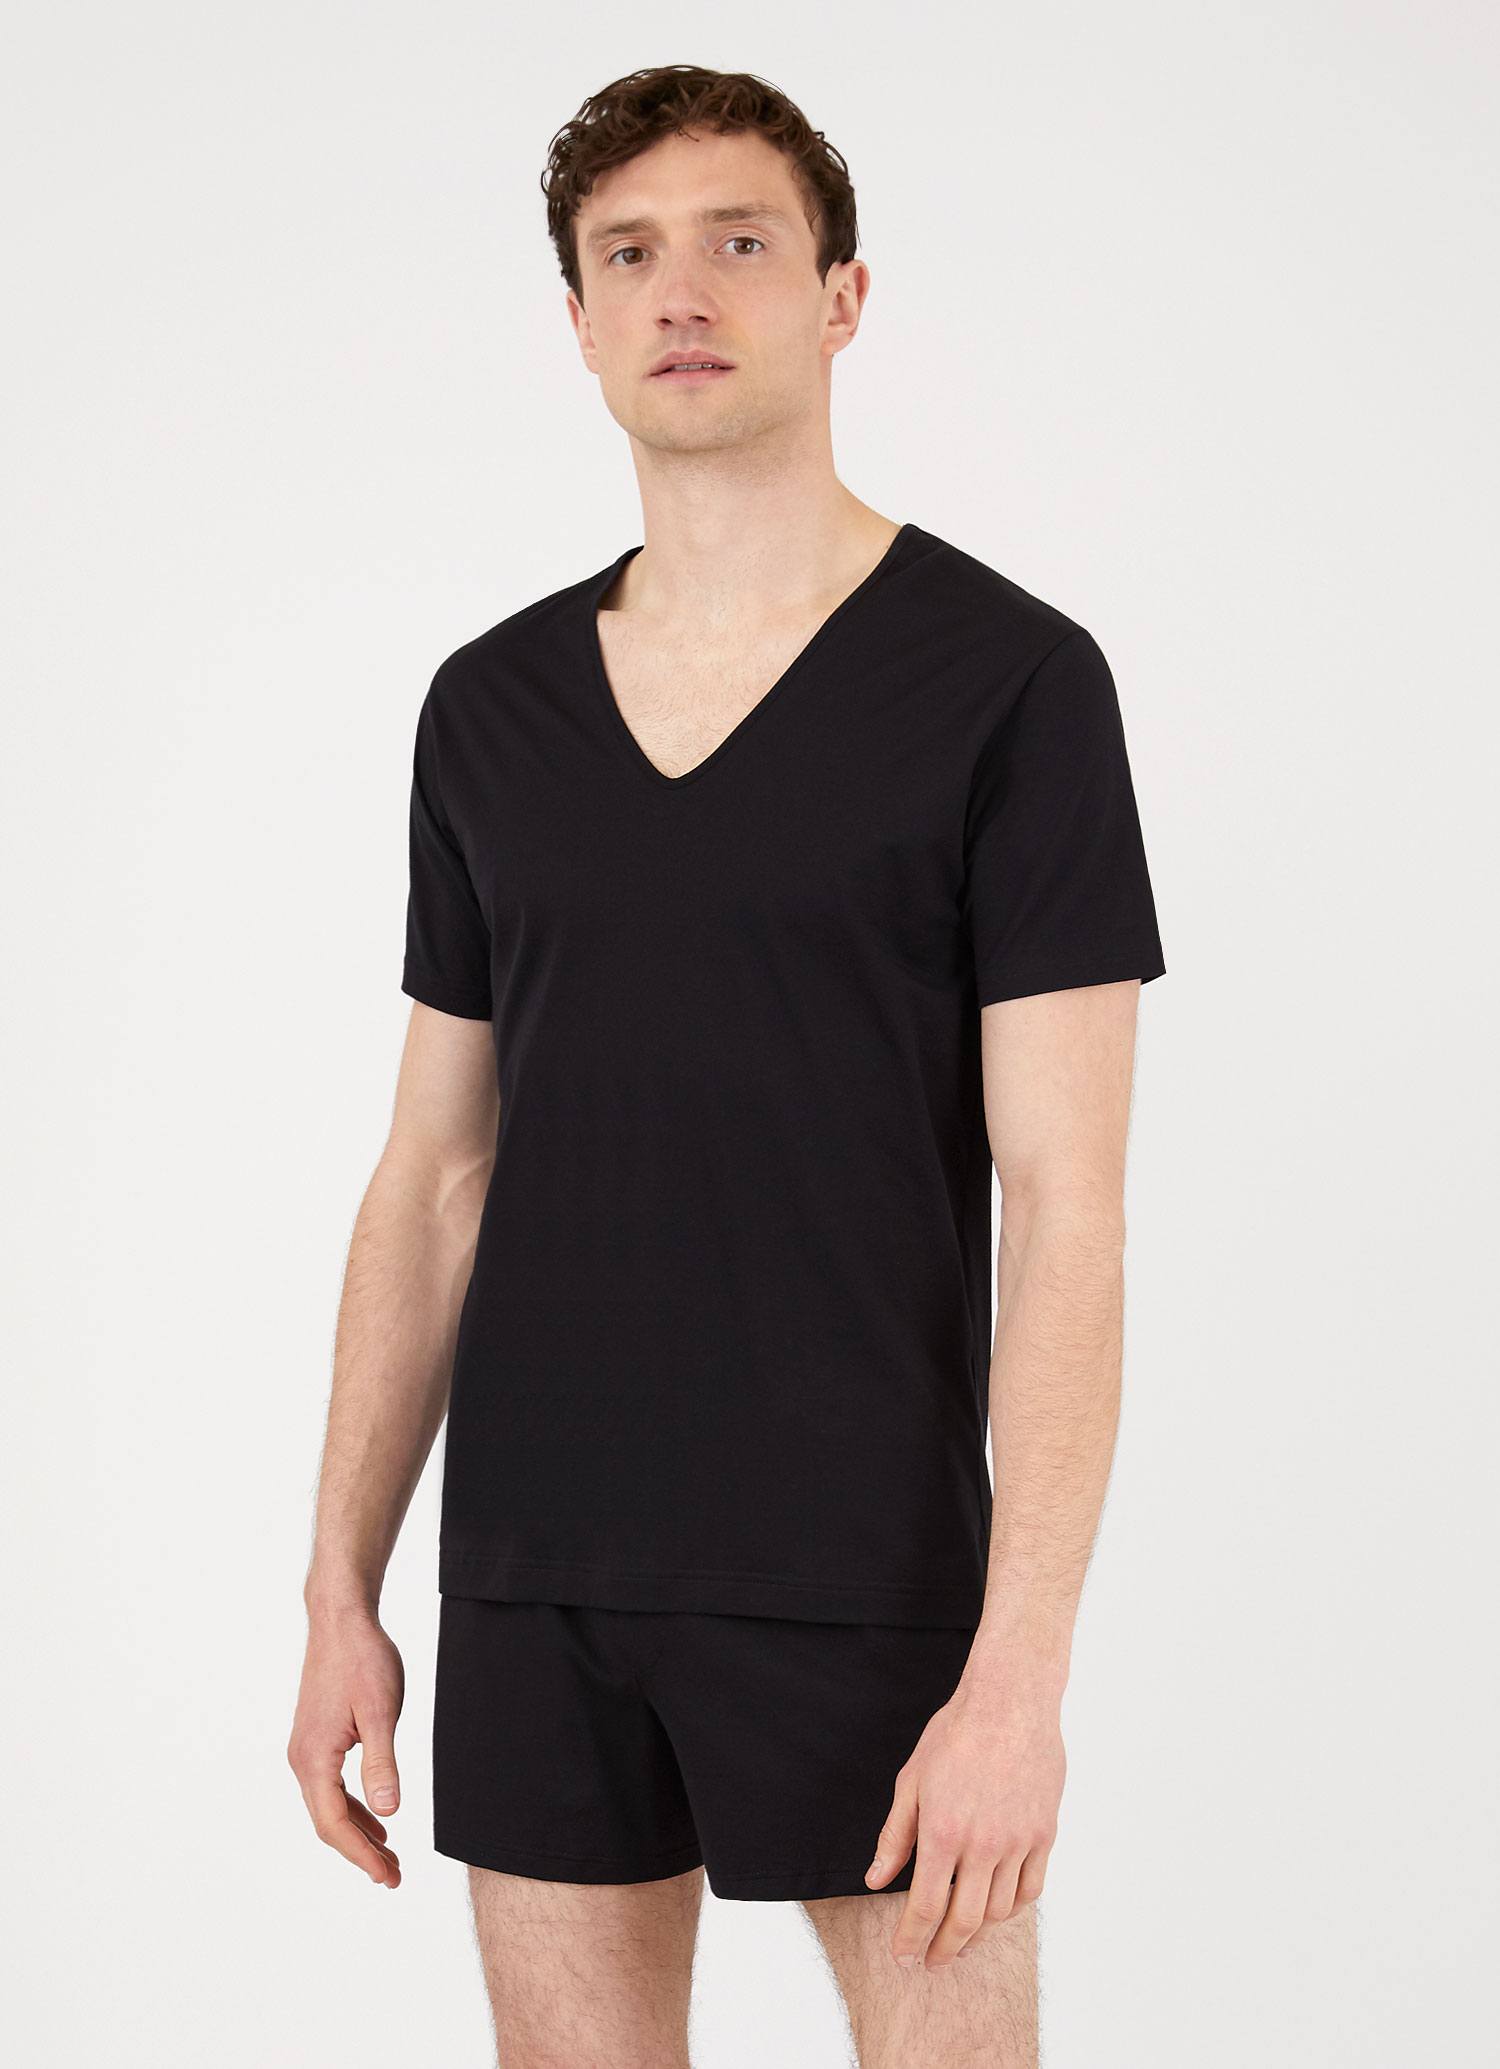 Men's Superfine Cotton V-Neck Underwear T-shirt in Black